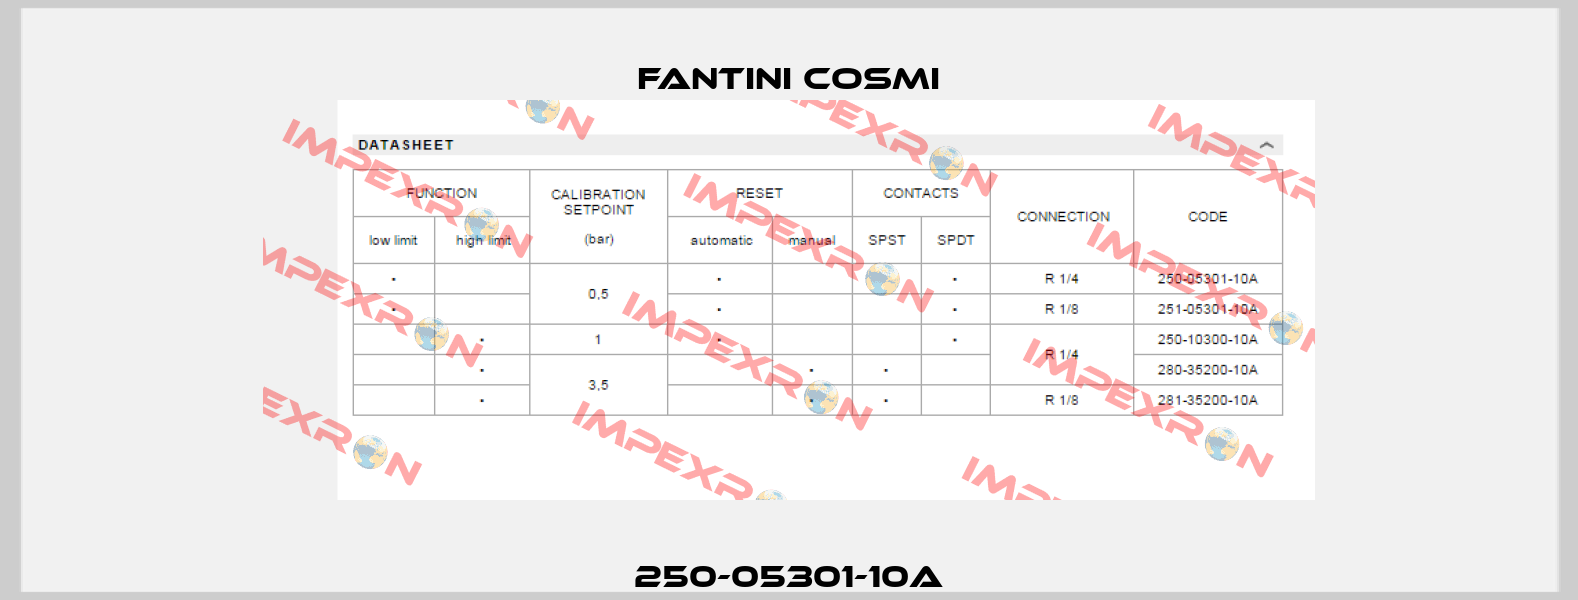 250-05301-10A Fantini Cosmi